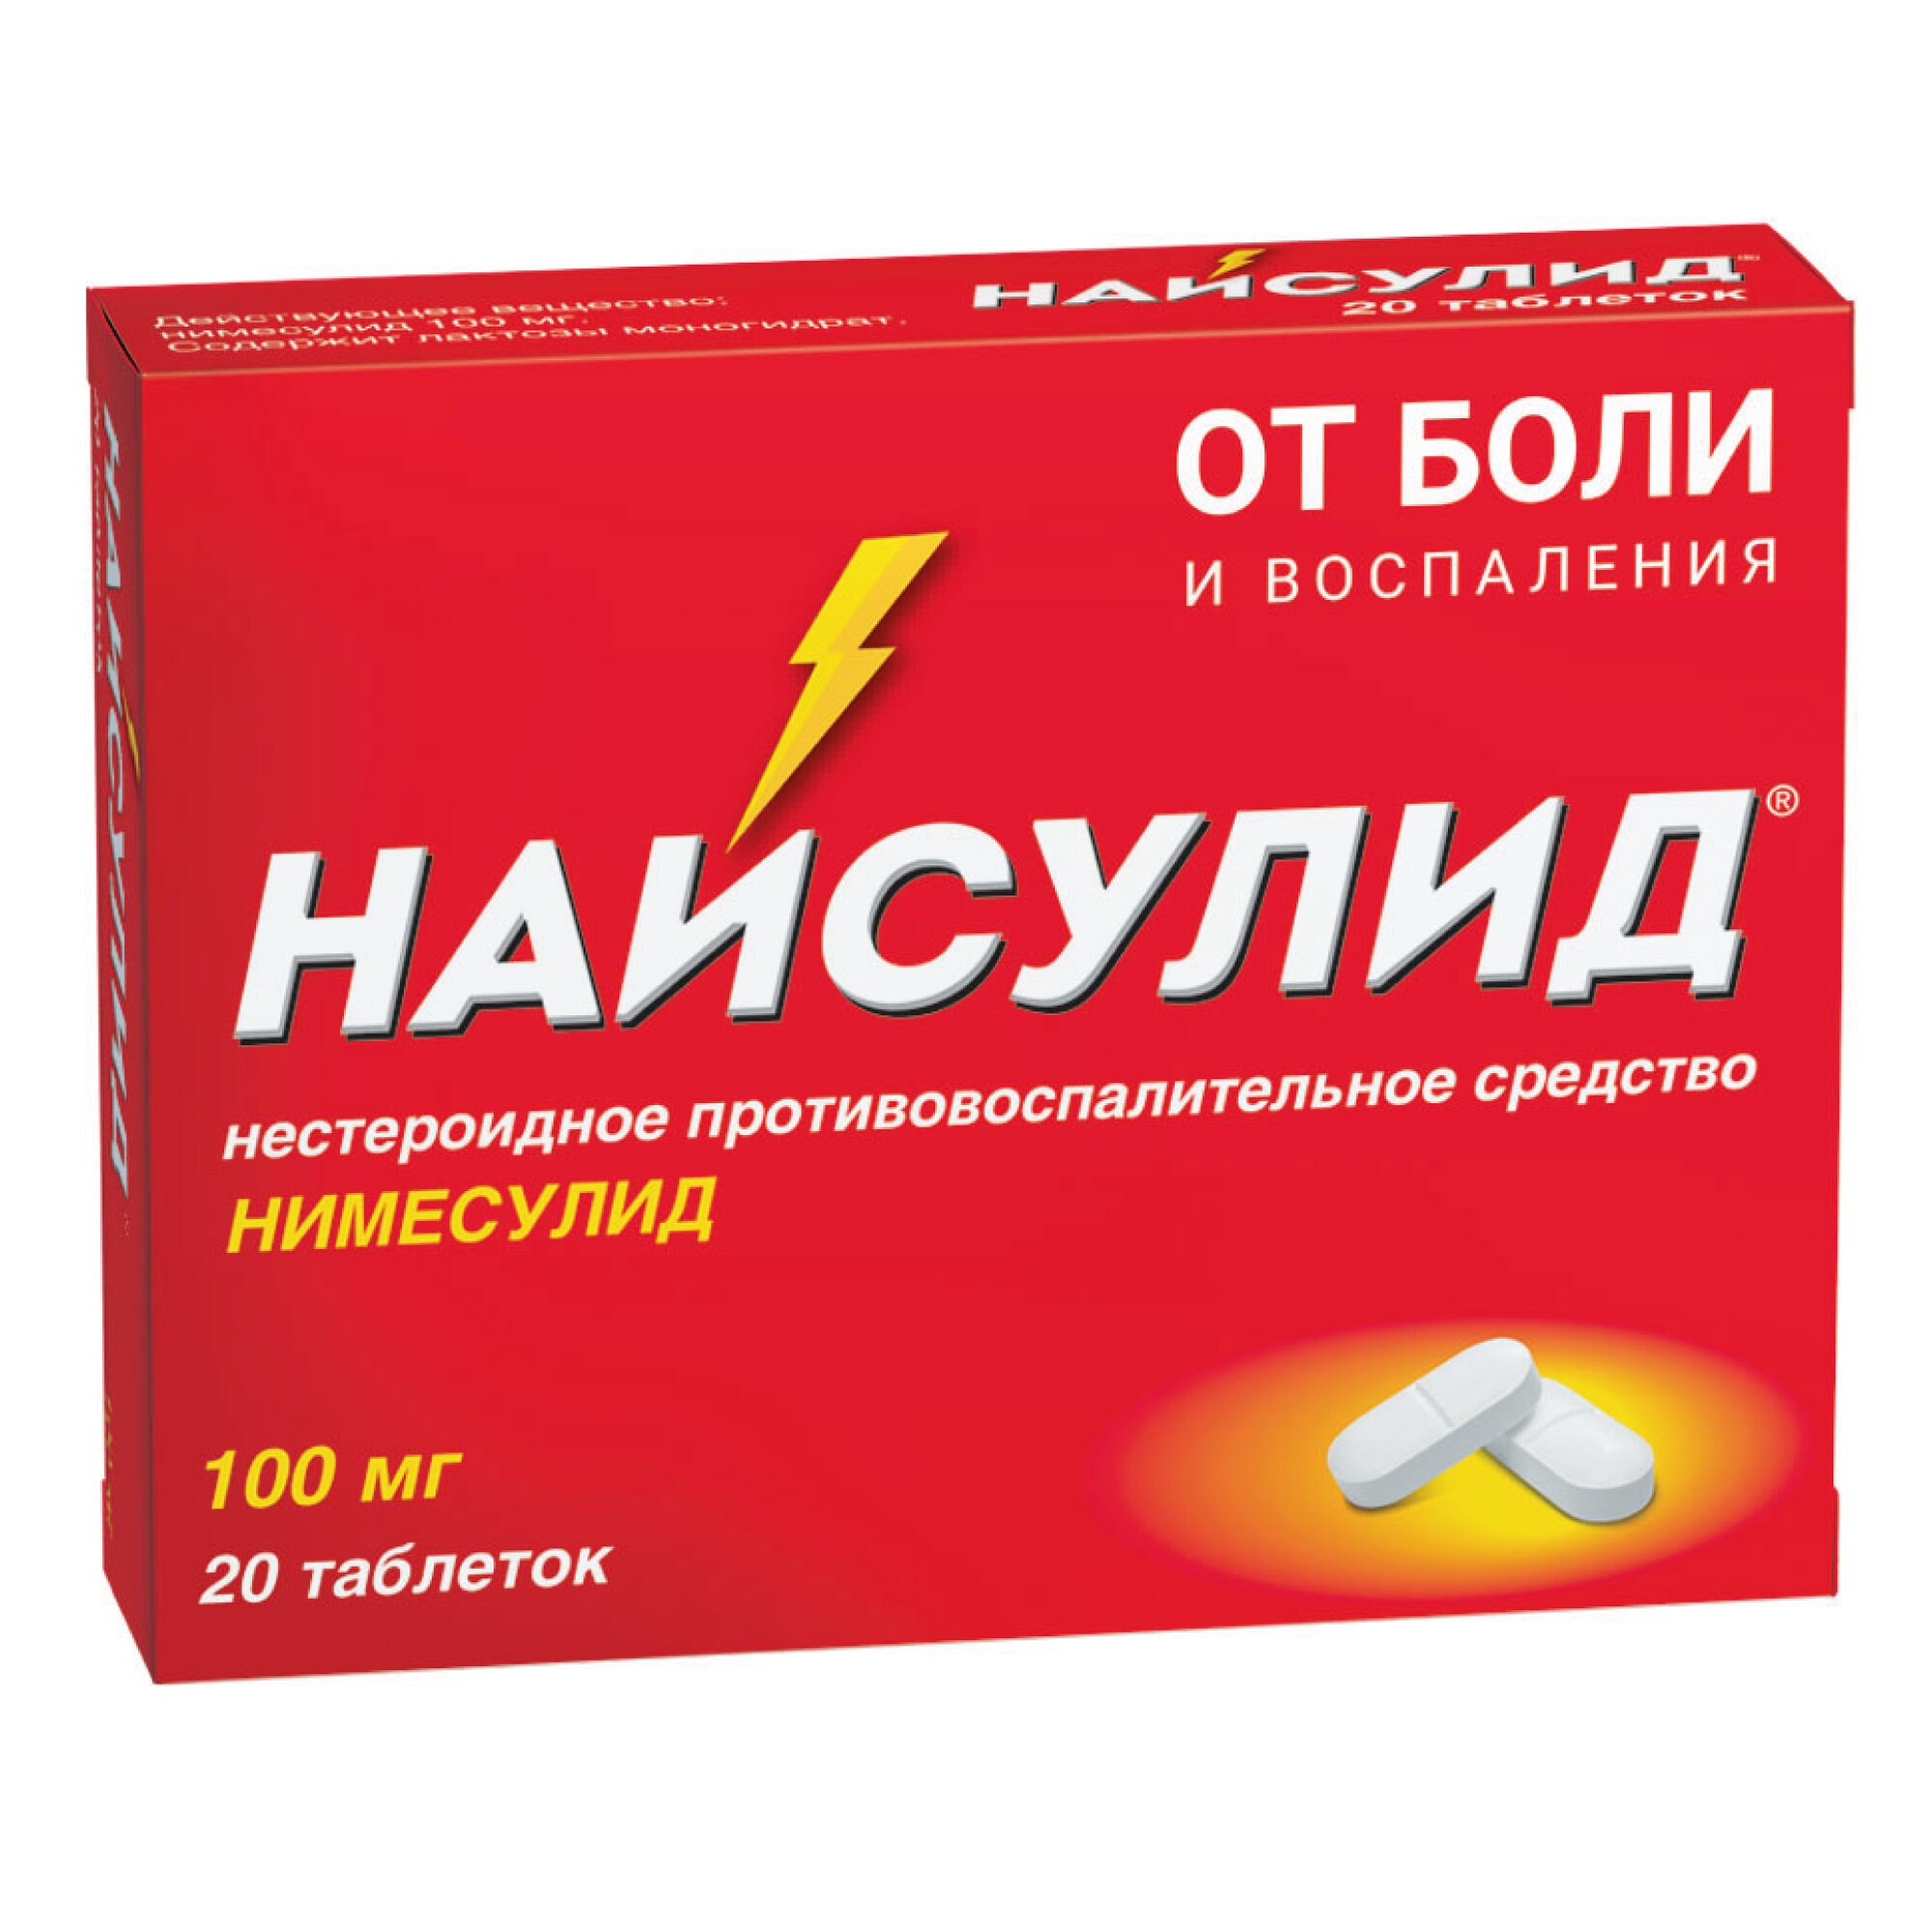 Наркотические анальгетики - признаки и лечение в Москве